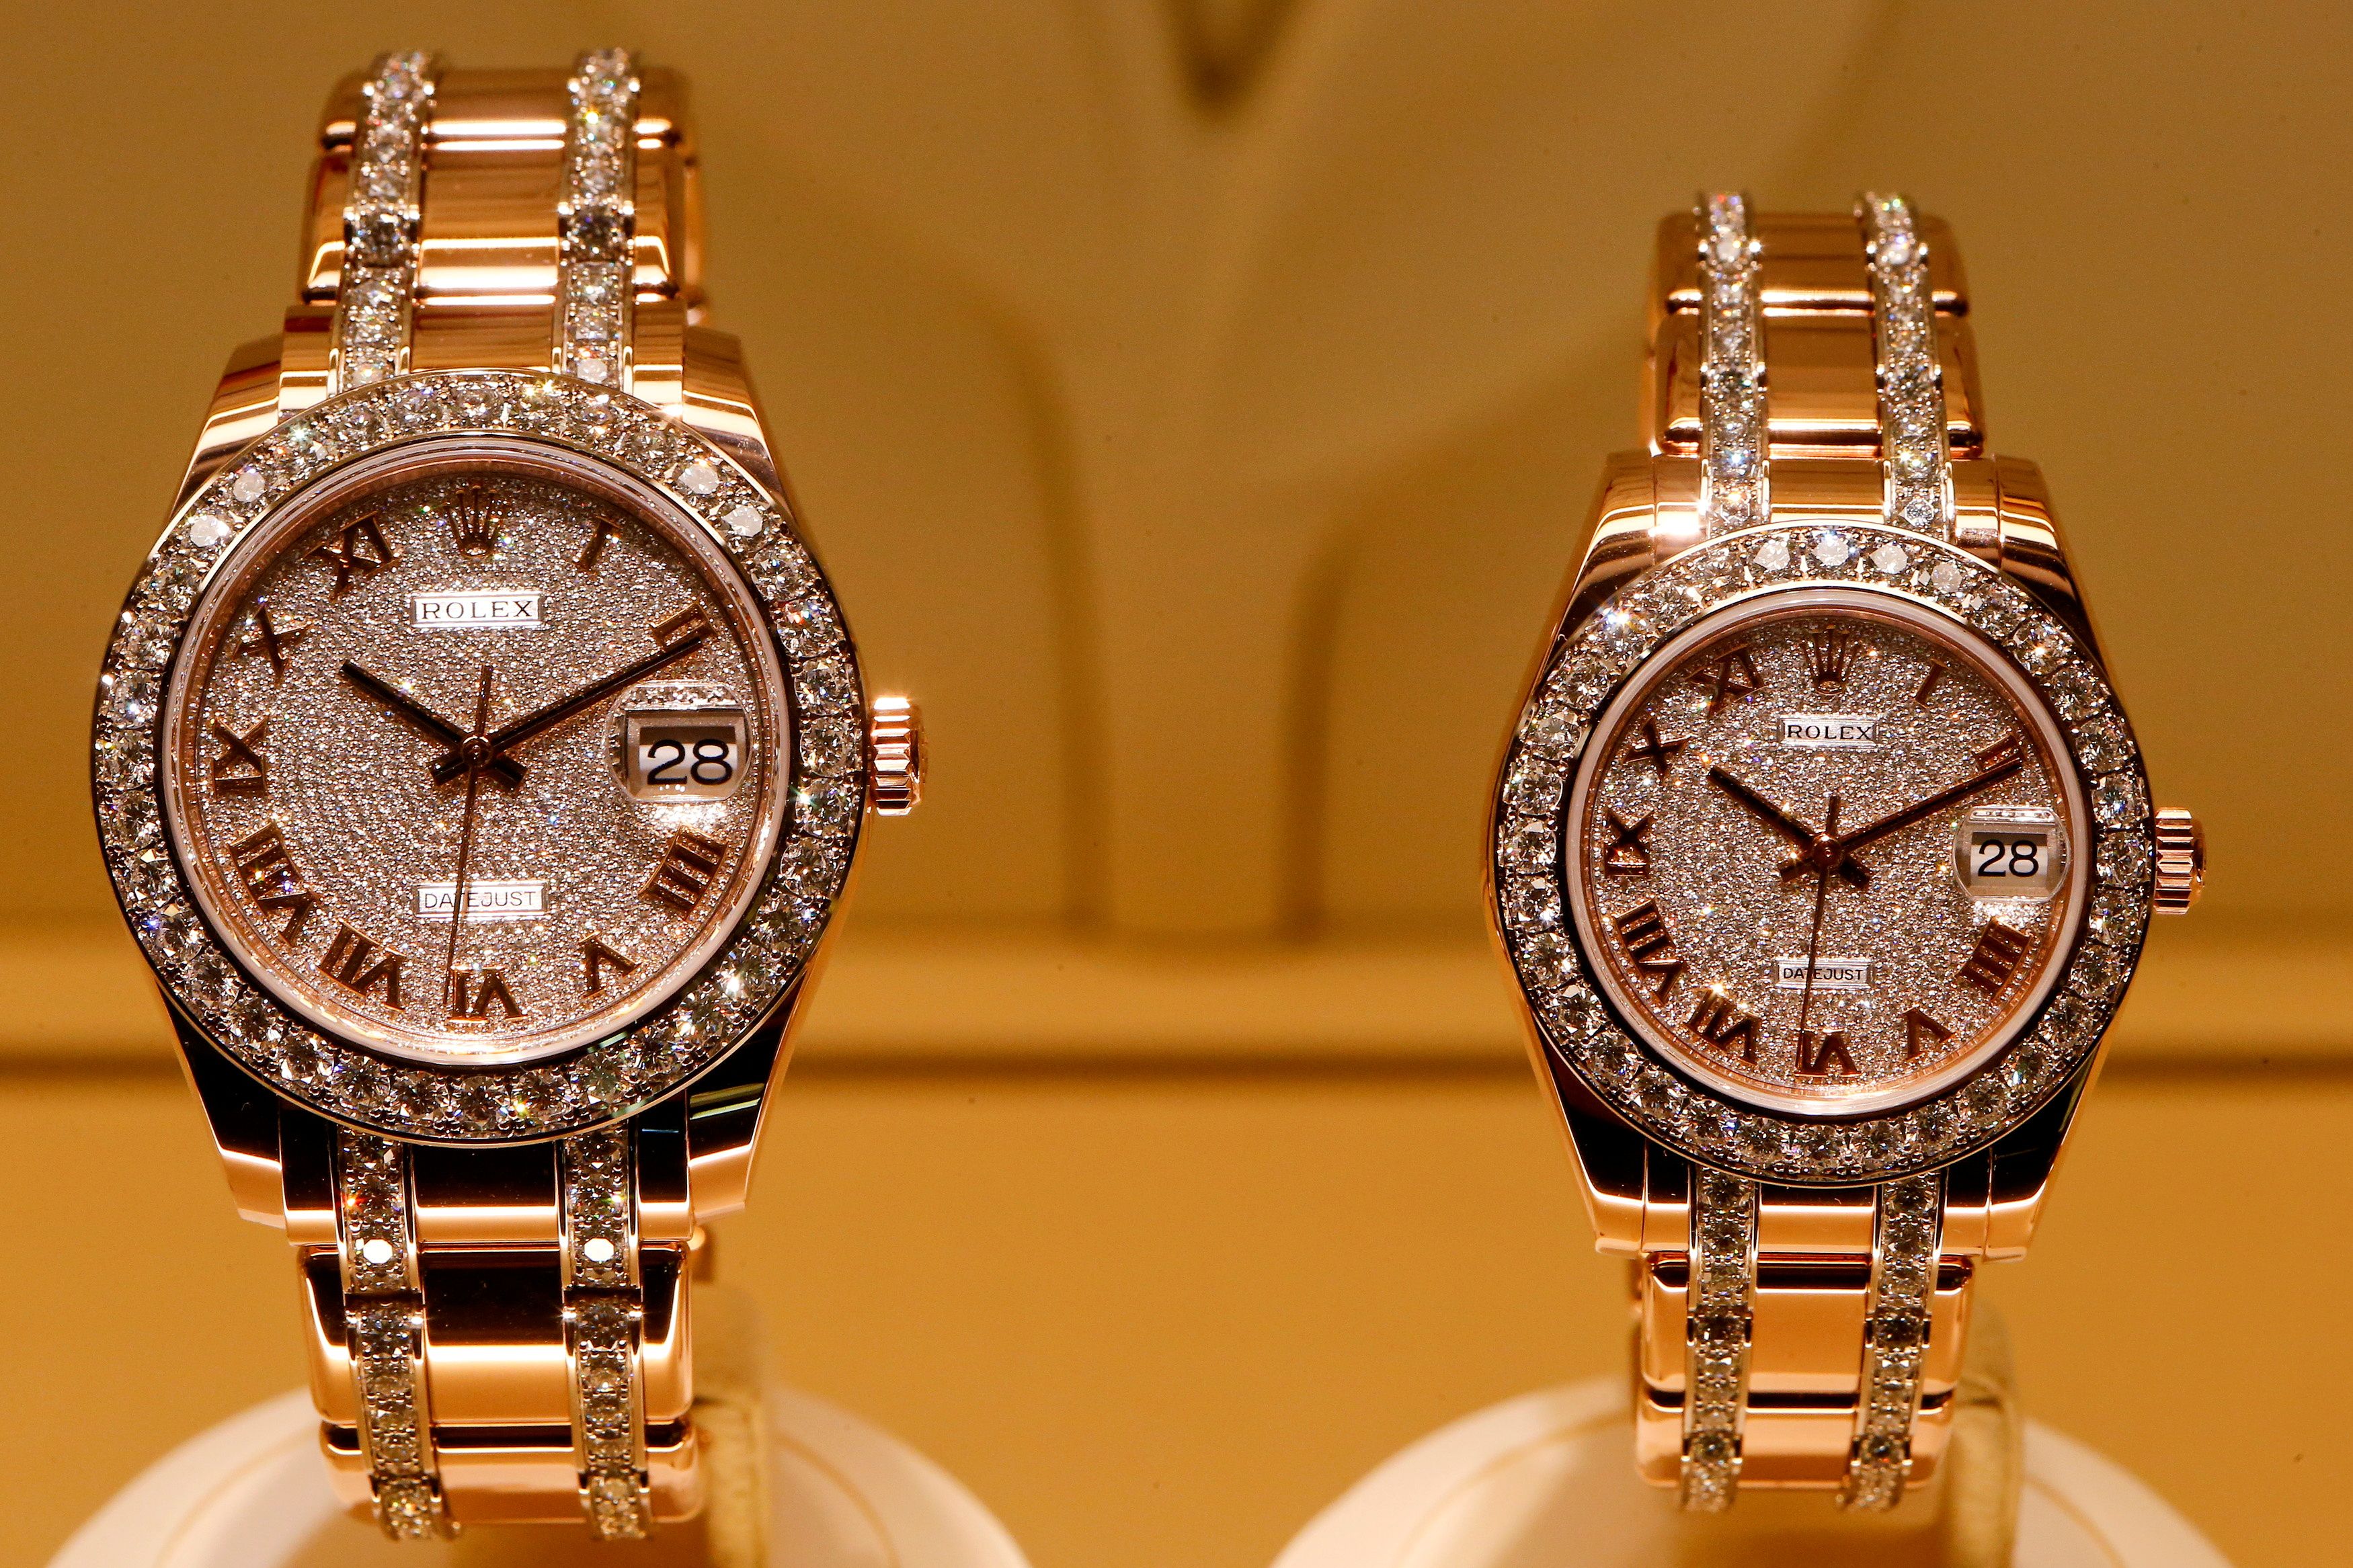 El aumento de robos de relojes de alta gama amenaza a marcas suizas como Rolex y Patek